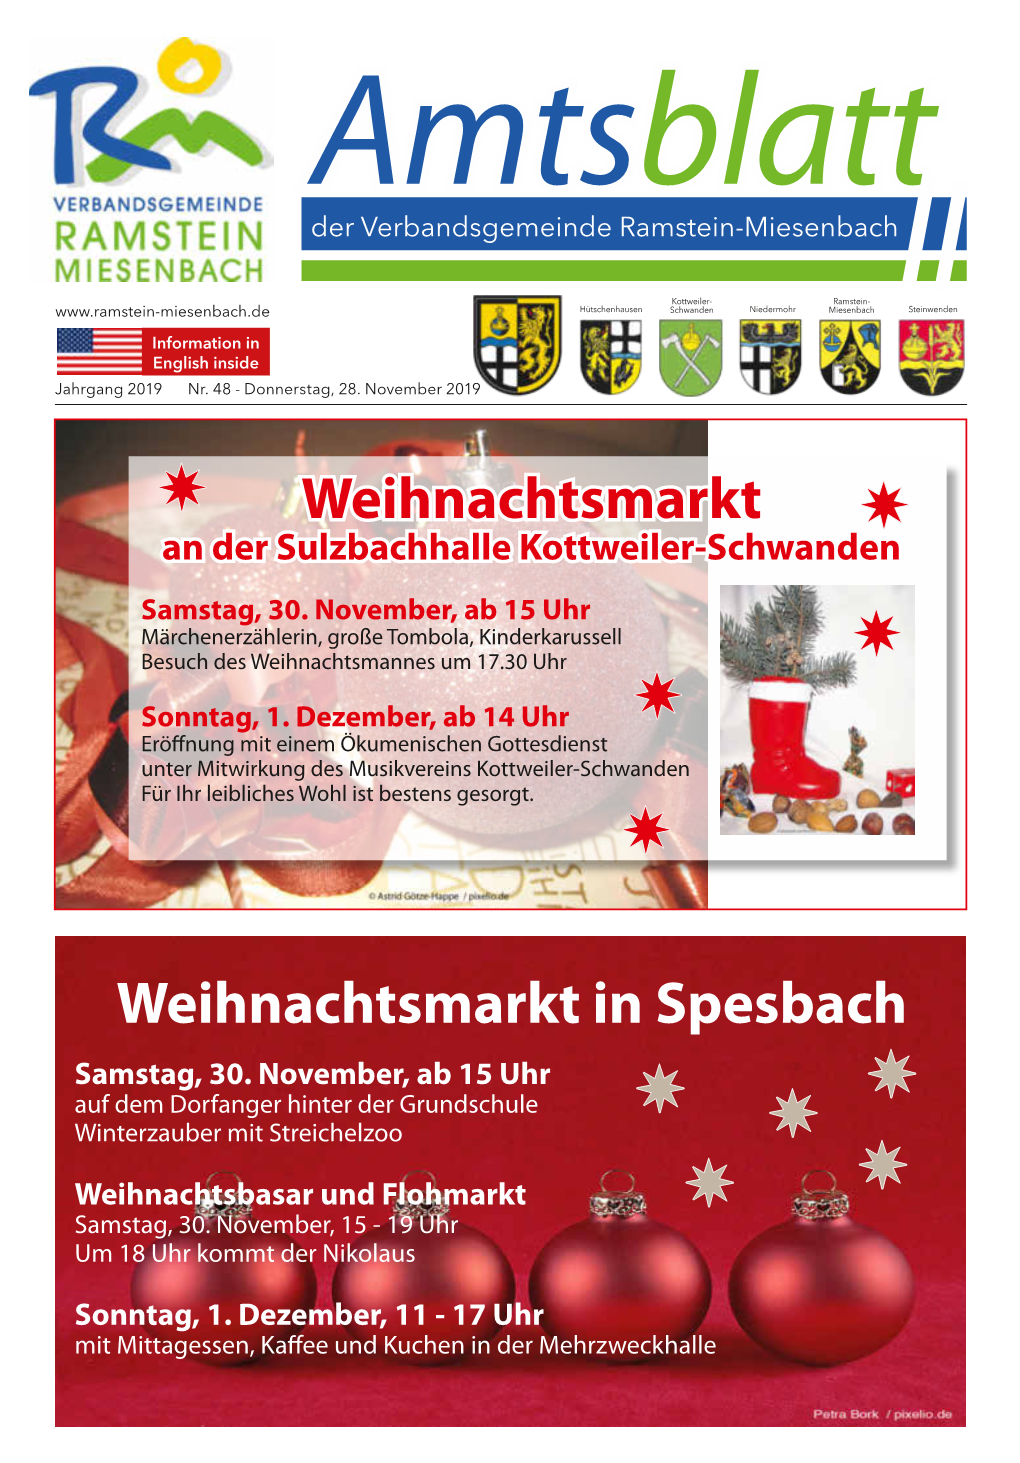 Weihnachtsmarkt in Spesbach Samstag, 30